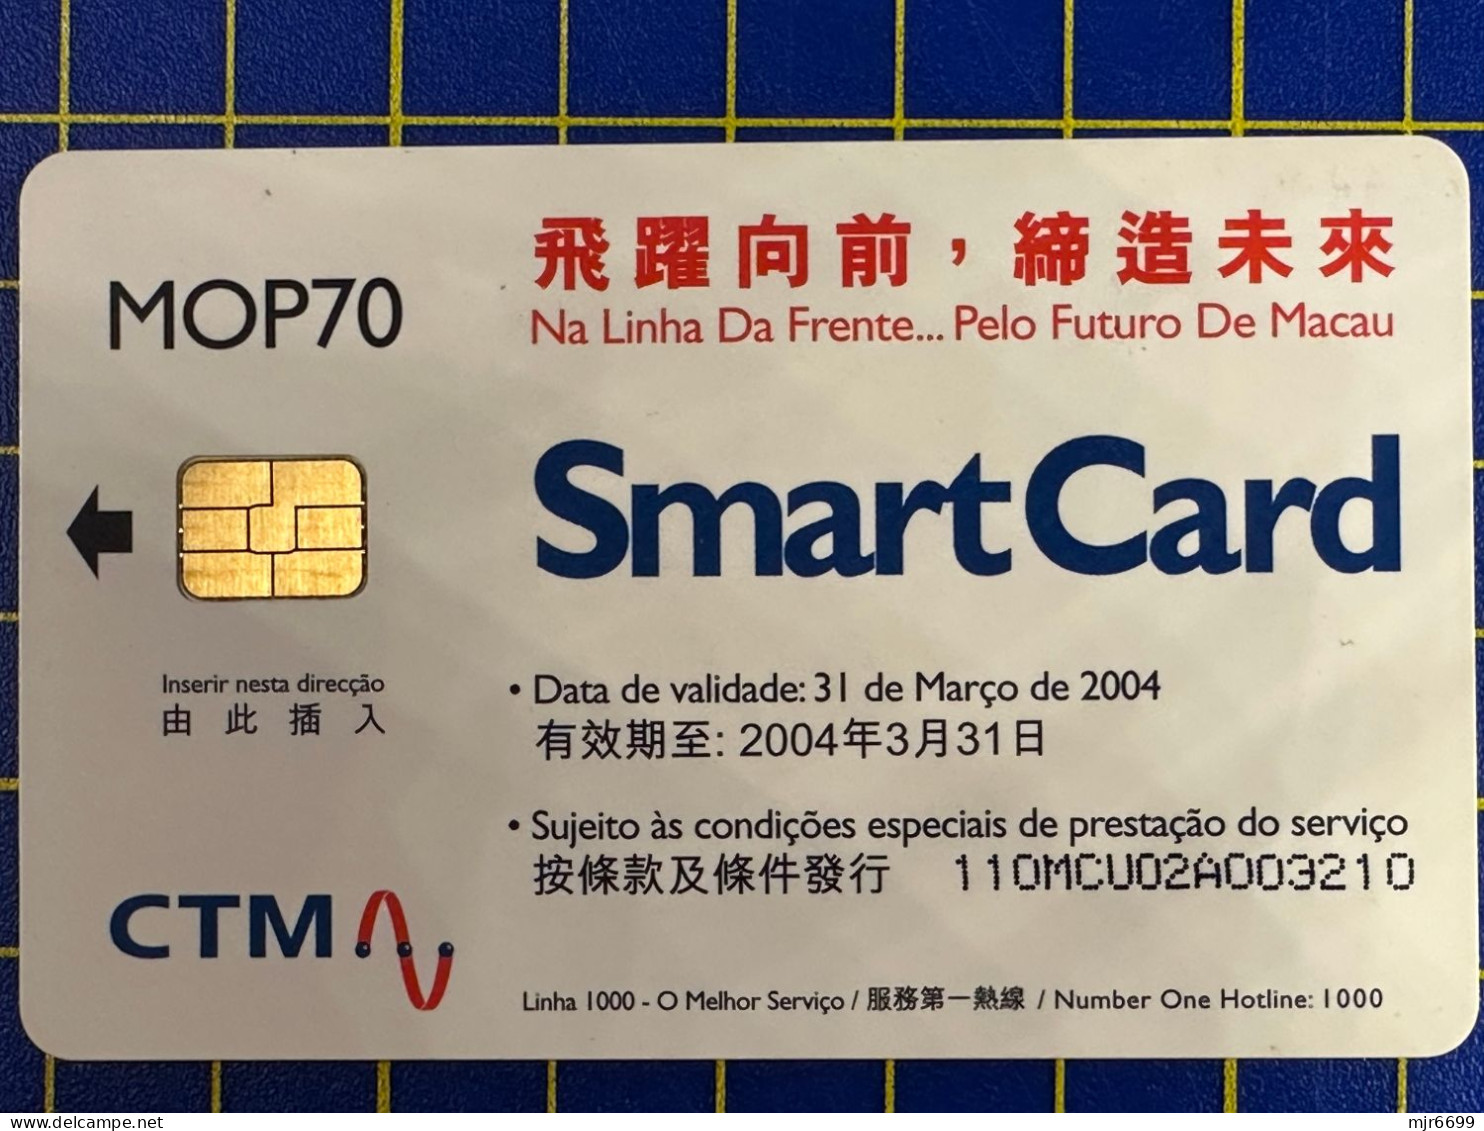 MACAU "SMART CARD" #110 MCU PHONE CARD VERY FINE AND CLEAN USED, VALID DATE / 31 MARCH 2004 - Macau